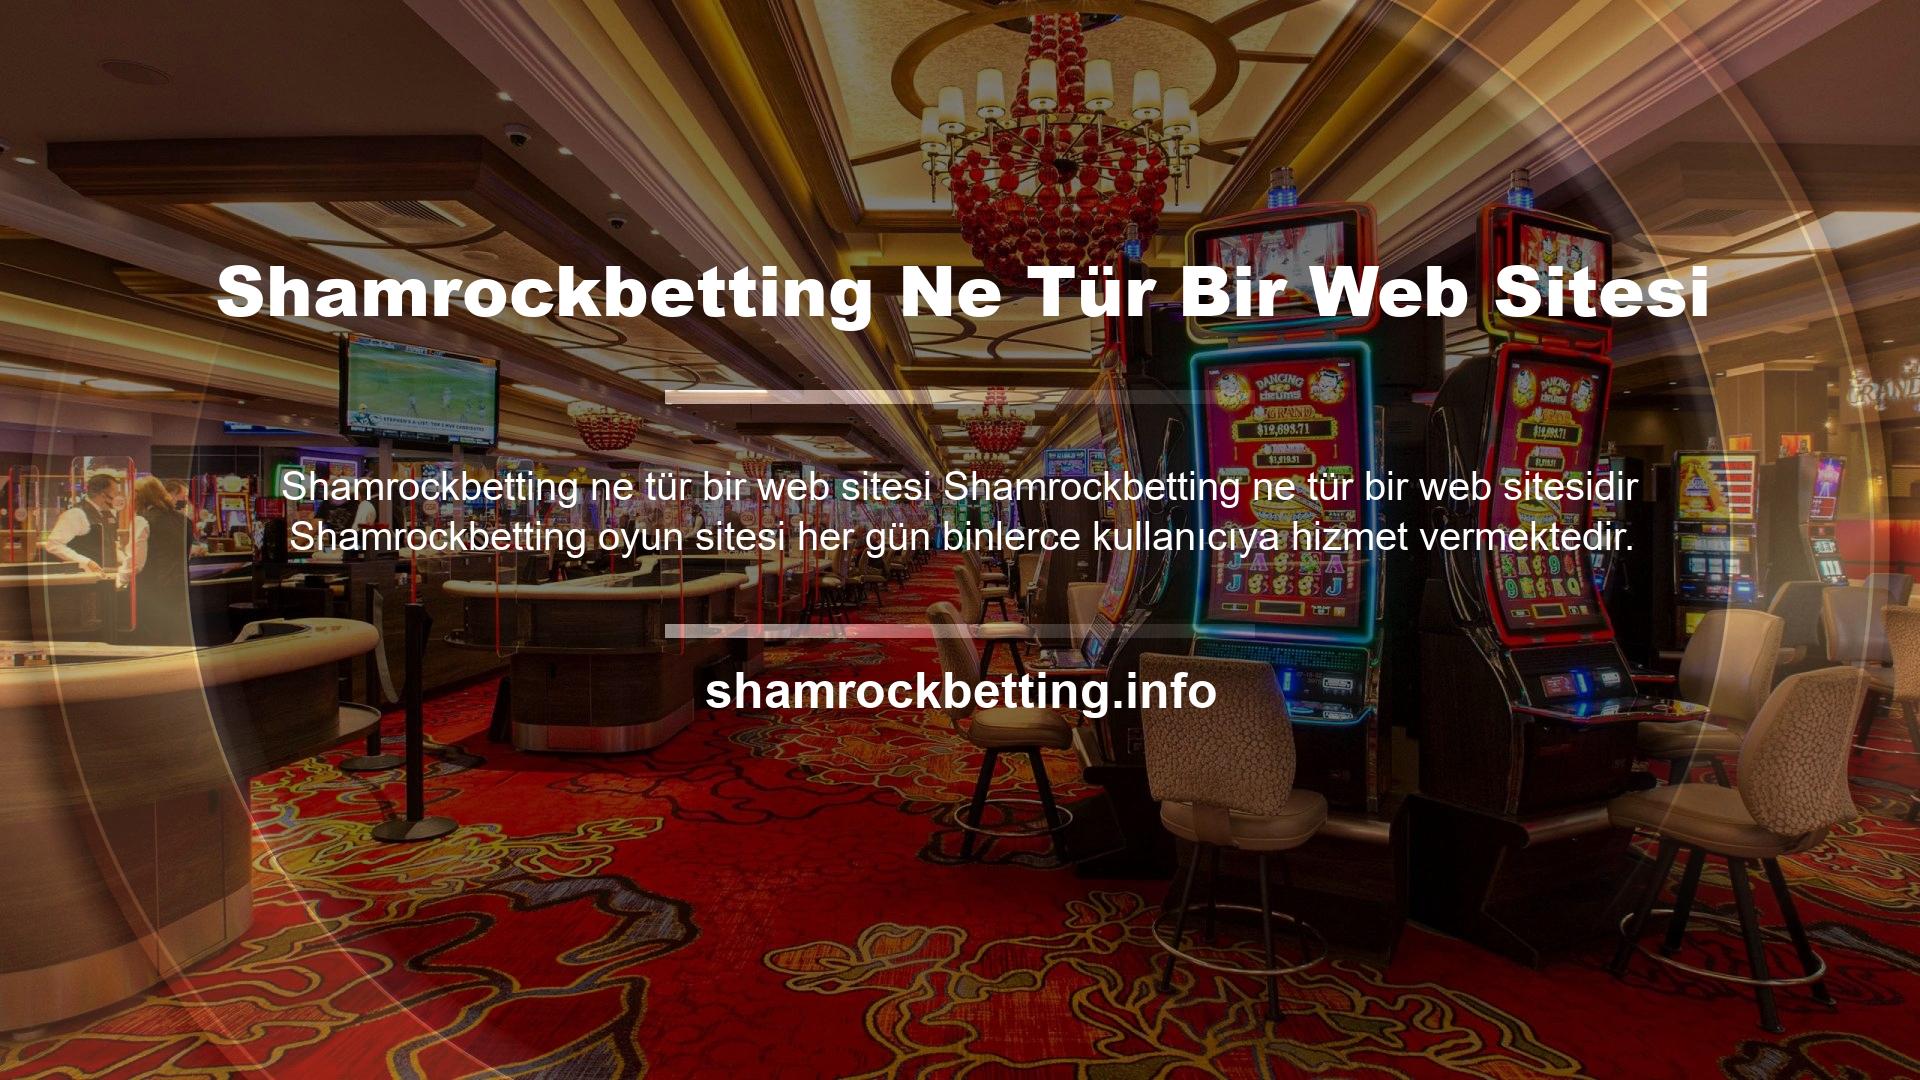 Bu durumda kullanıcıların Shamrockbetting web sitesi hakkında soru sorması normaldir